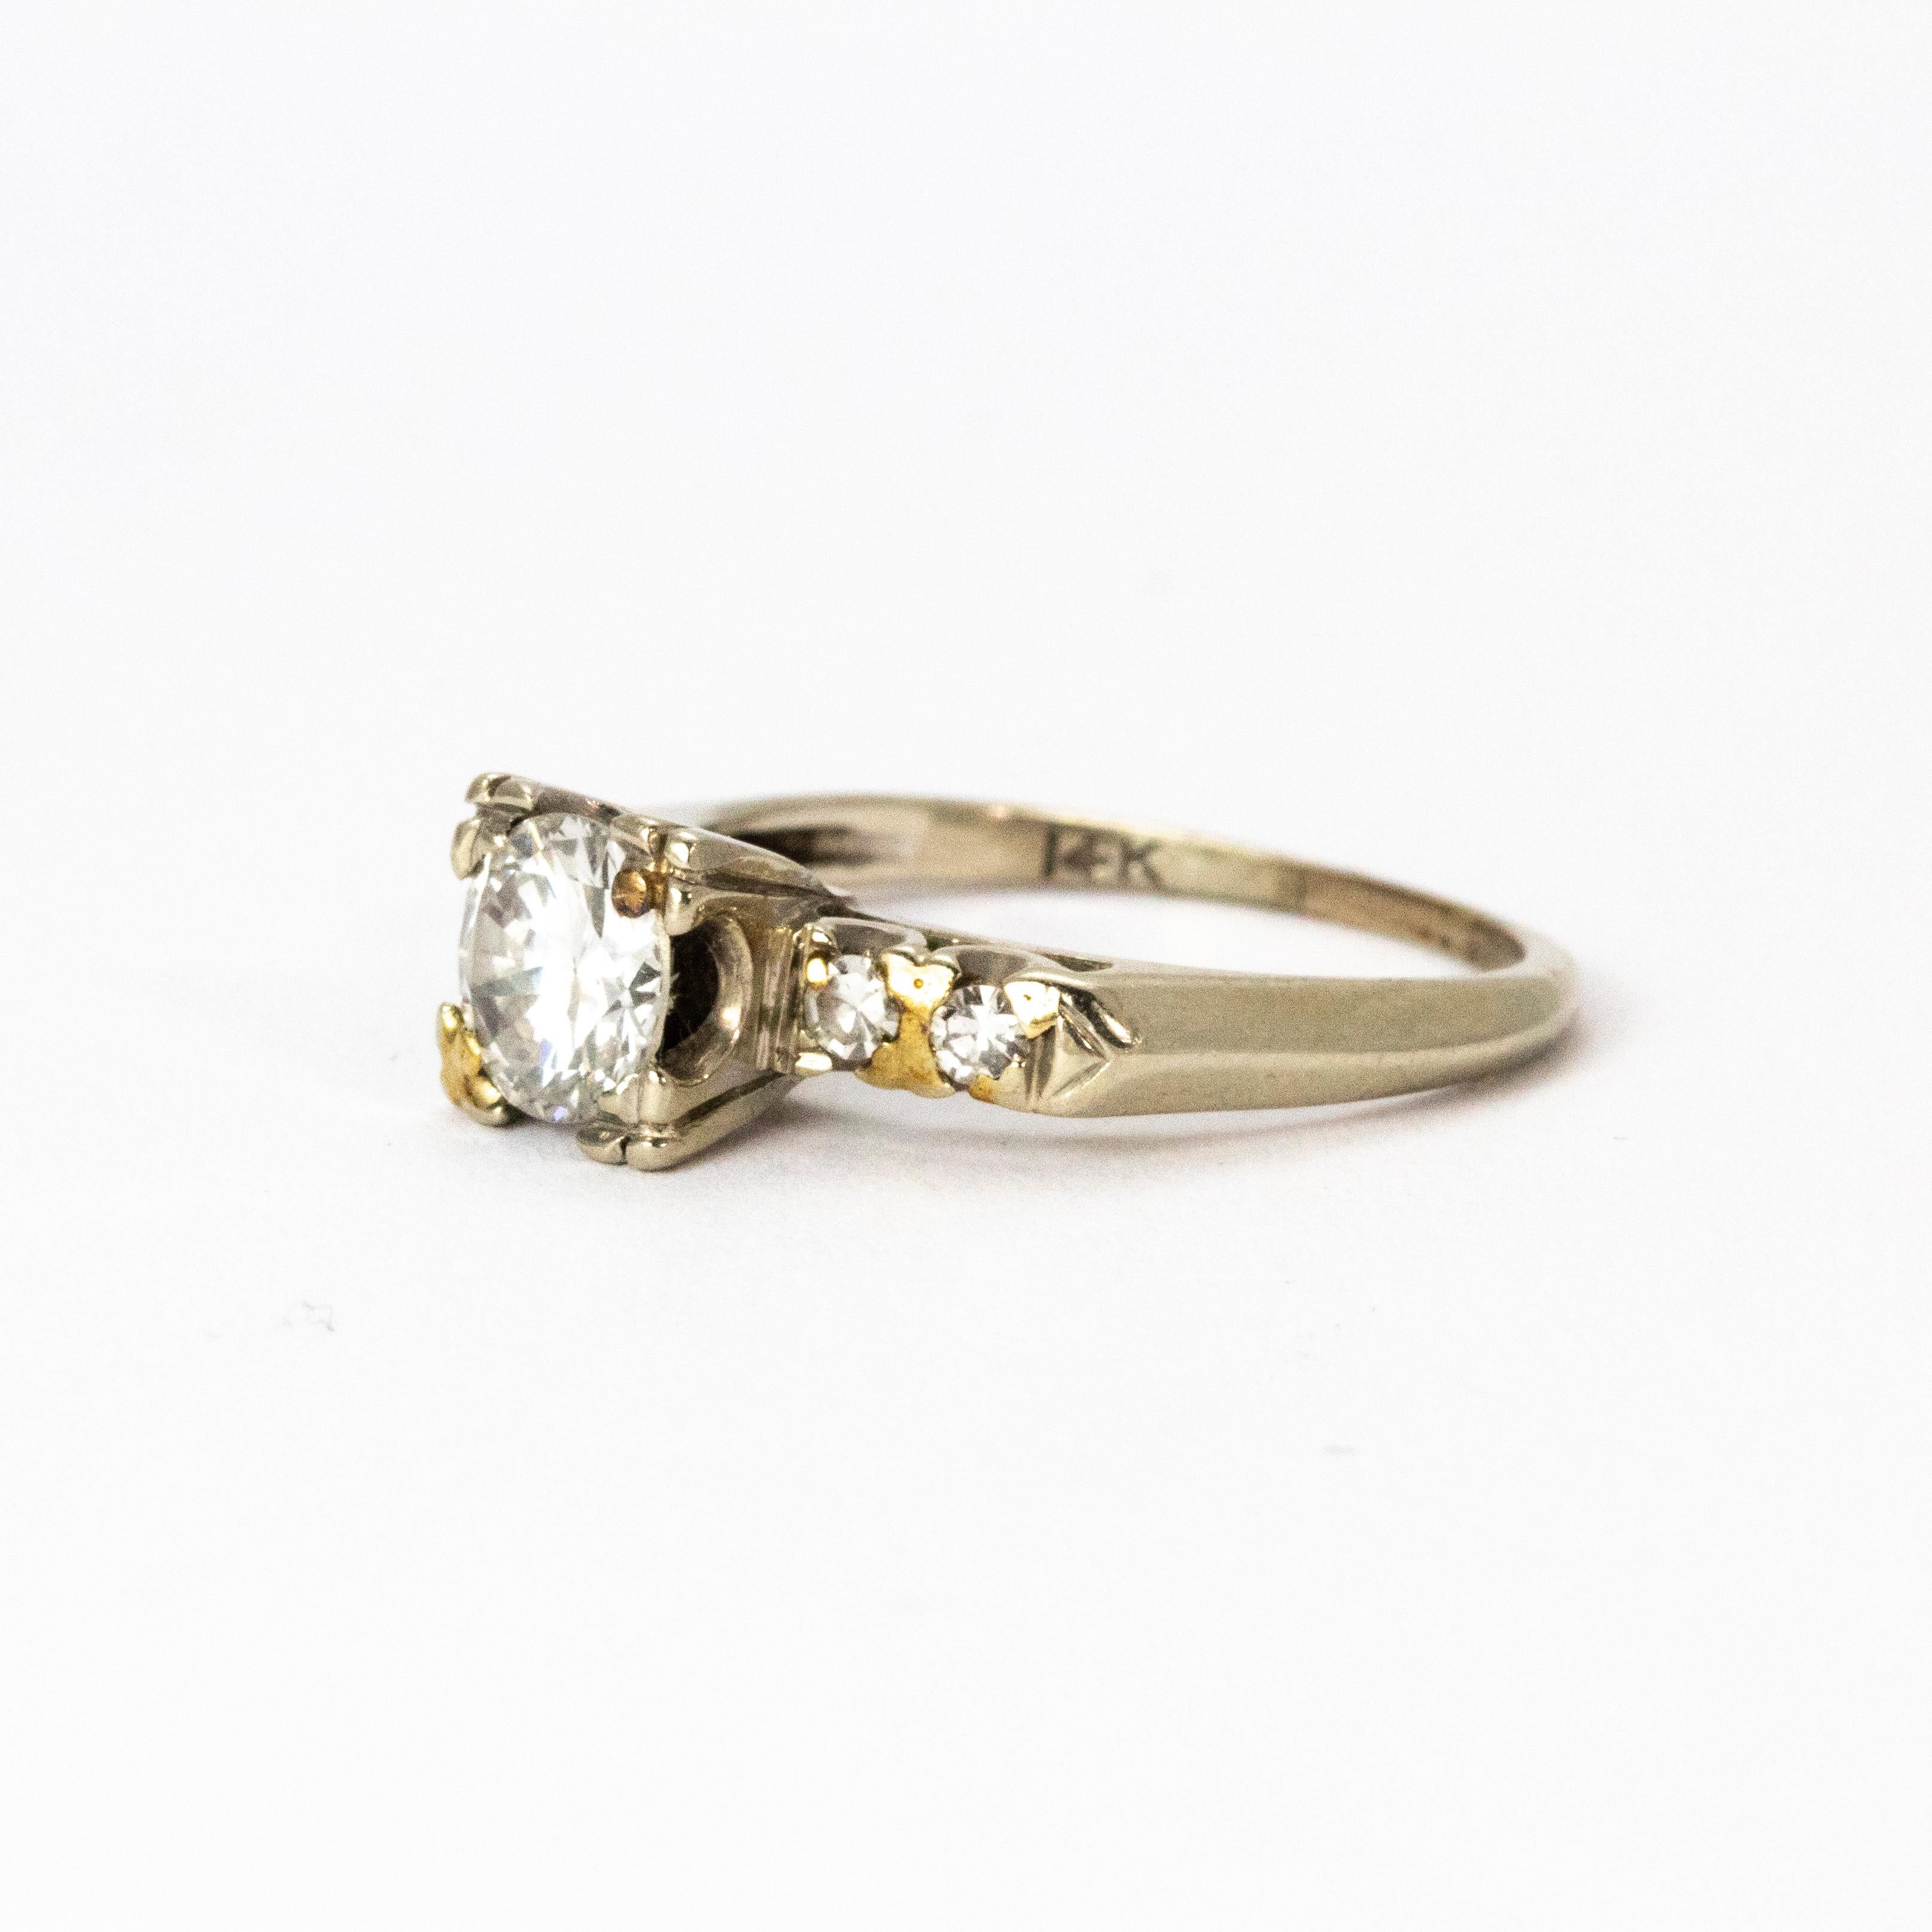 Superbe bague solitaire en diamant de l'époque édouardienne, vers 1901. Le magnifique diamant central de taille européenne ancienne mesure 80 points, est de couleur H et de pureté VS2. Les épaules sont chacune serties d'une paire de diamants, le